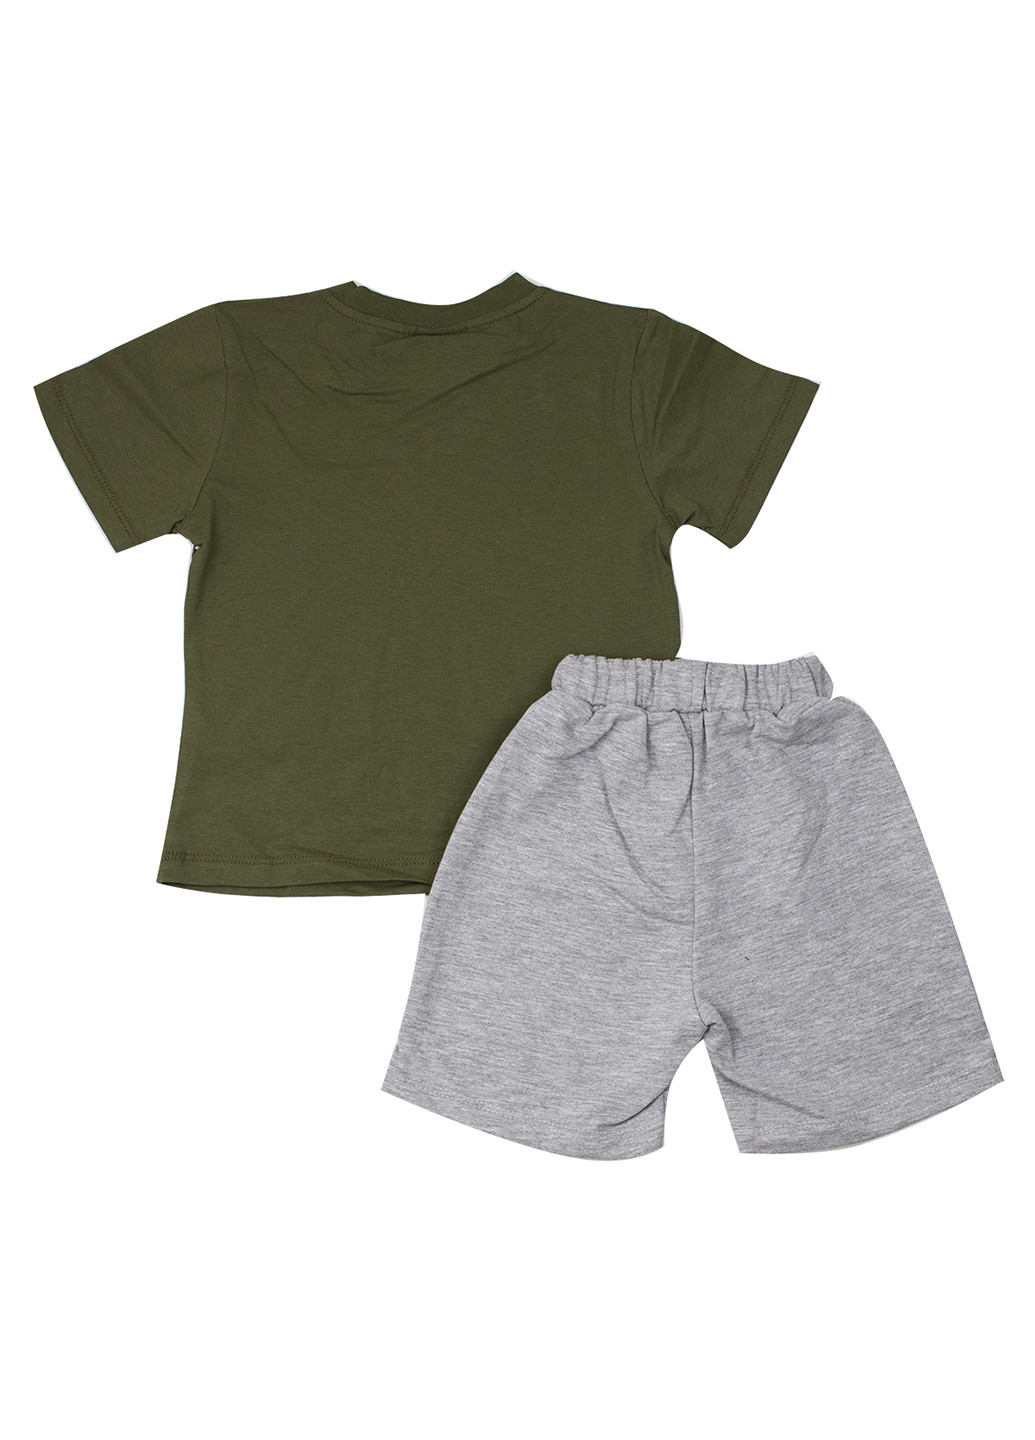 Сіро-зелений літній комплект (футболка, шорти) GMC